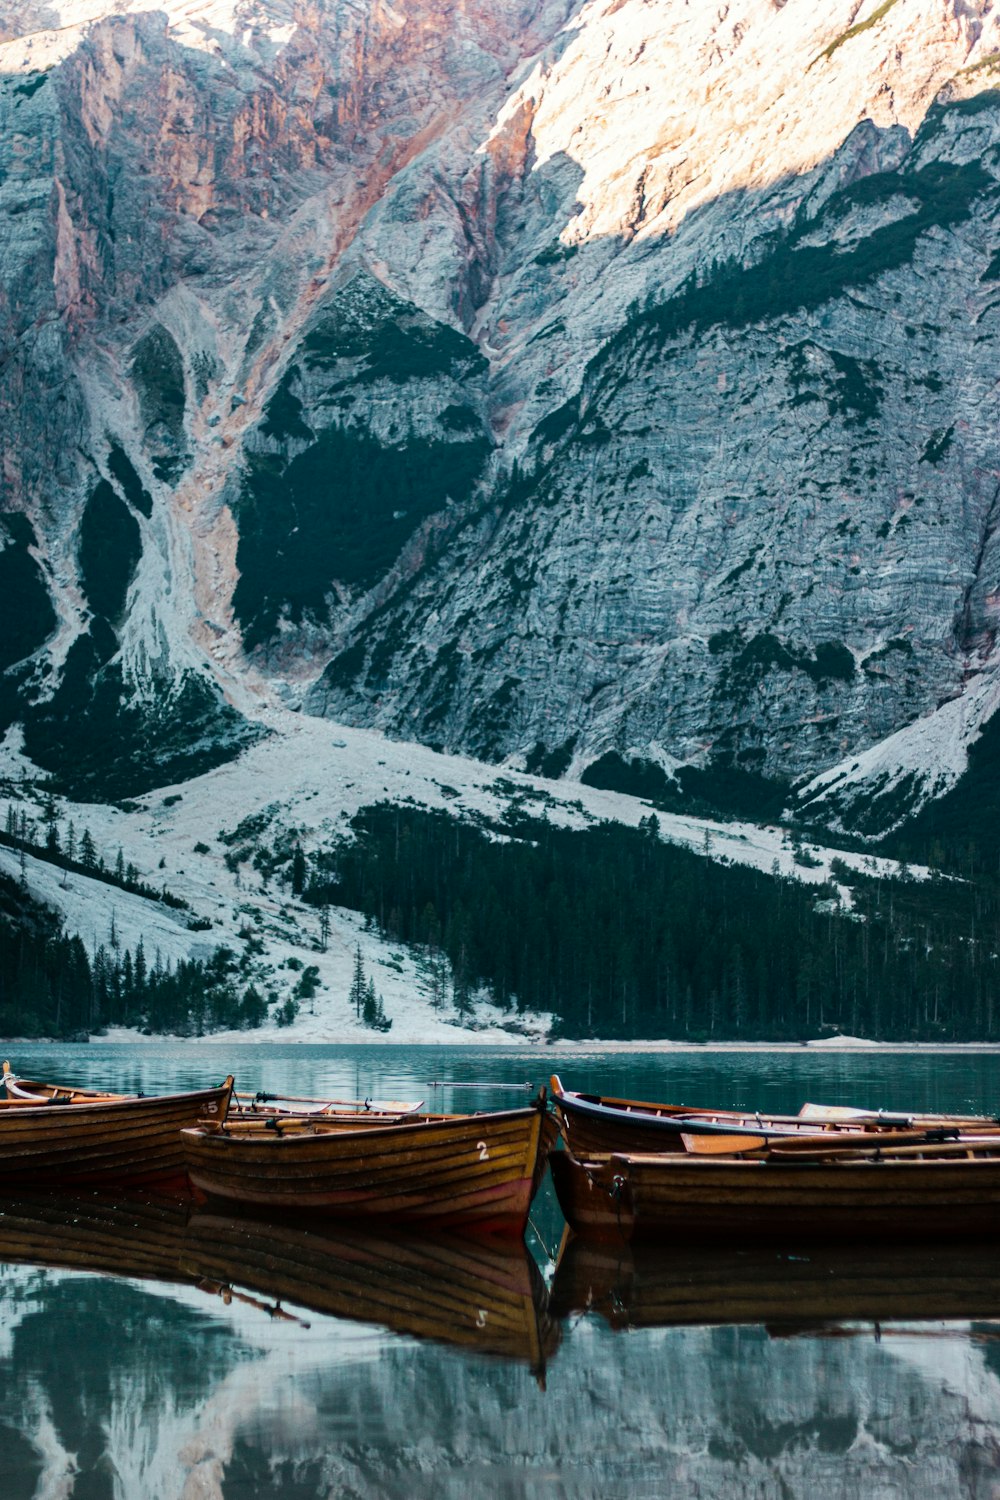 Eine Gruppe von Booten in einem Gewässer an einem felsigen Berg